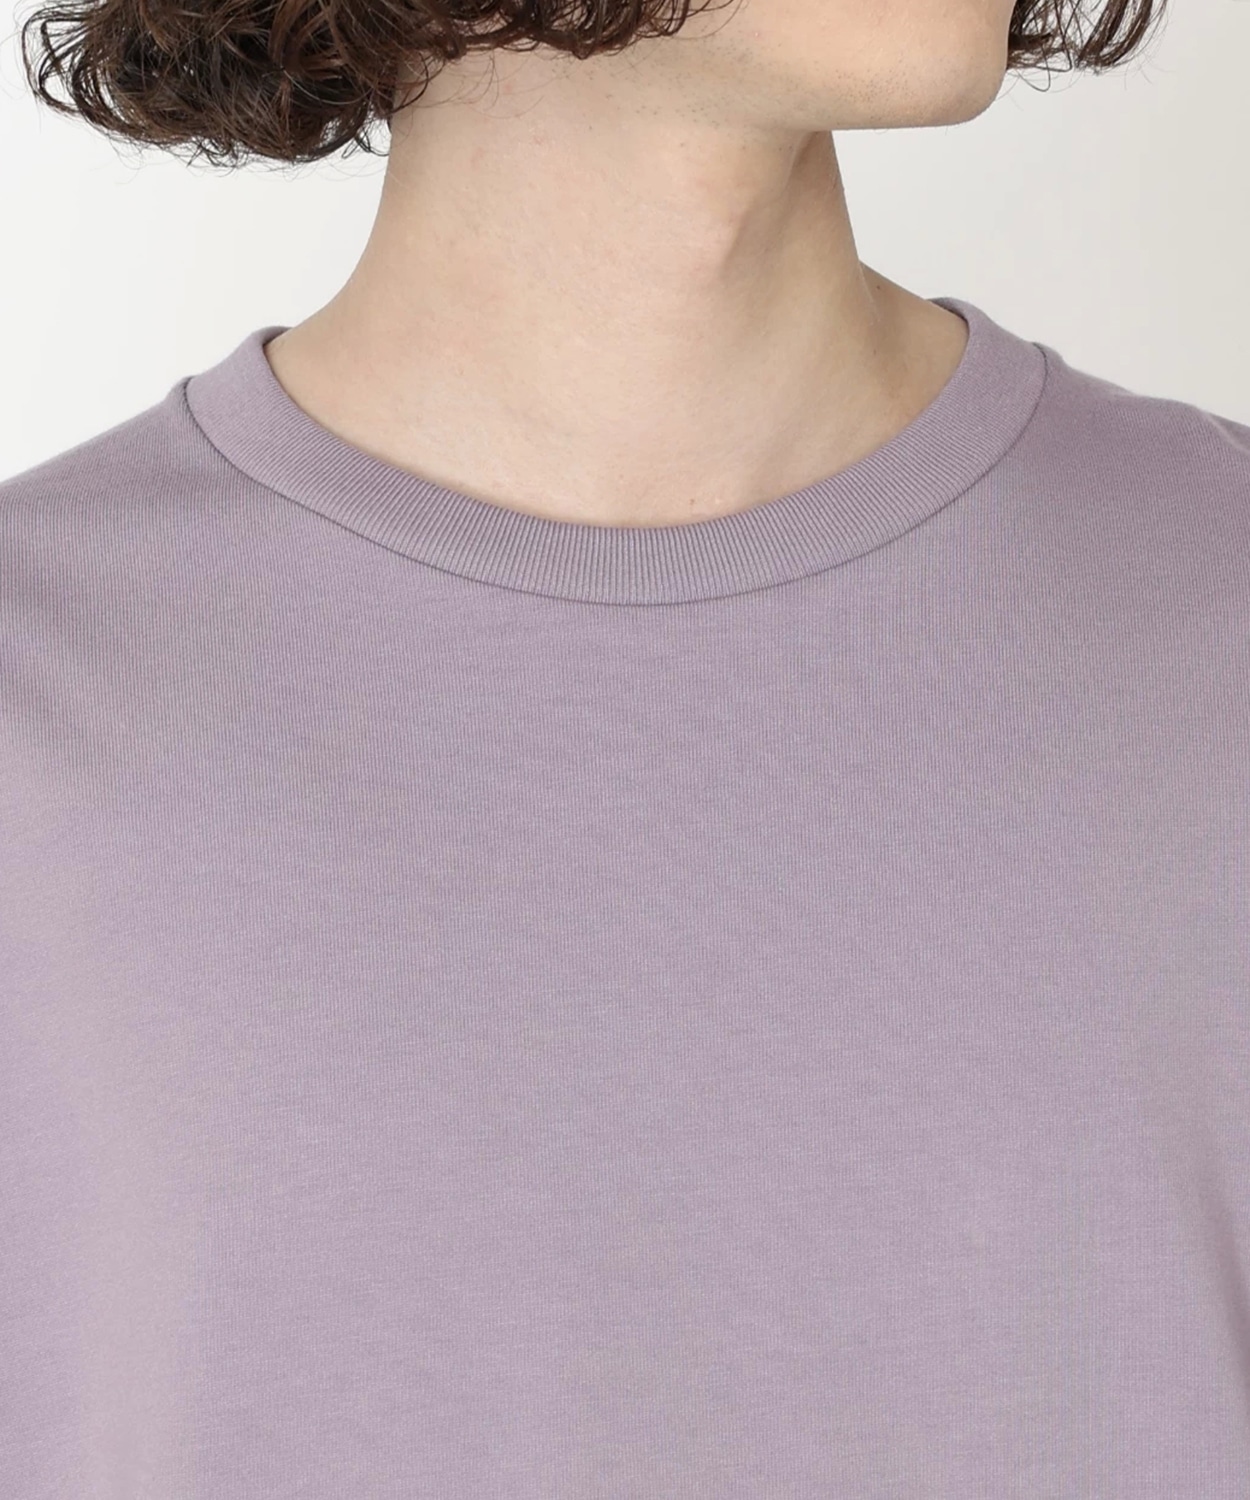 ミラーズクレストロングスリーブグラフィックTシャツ Shale Purple XL